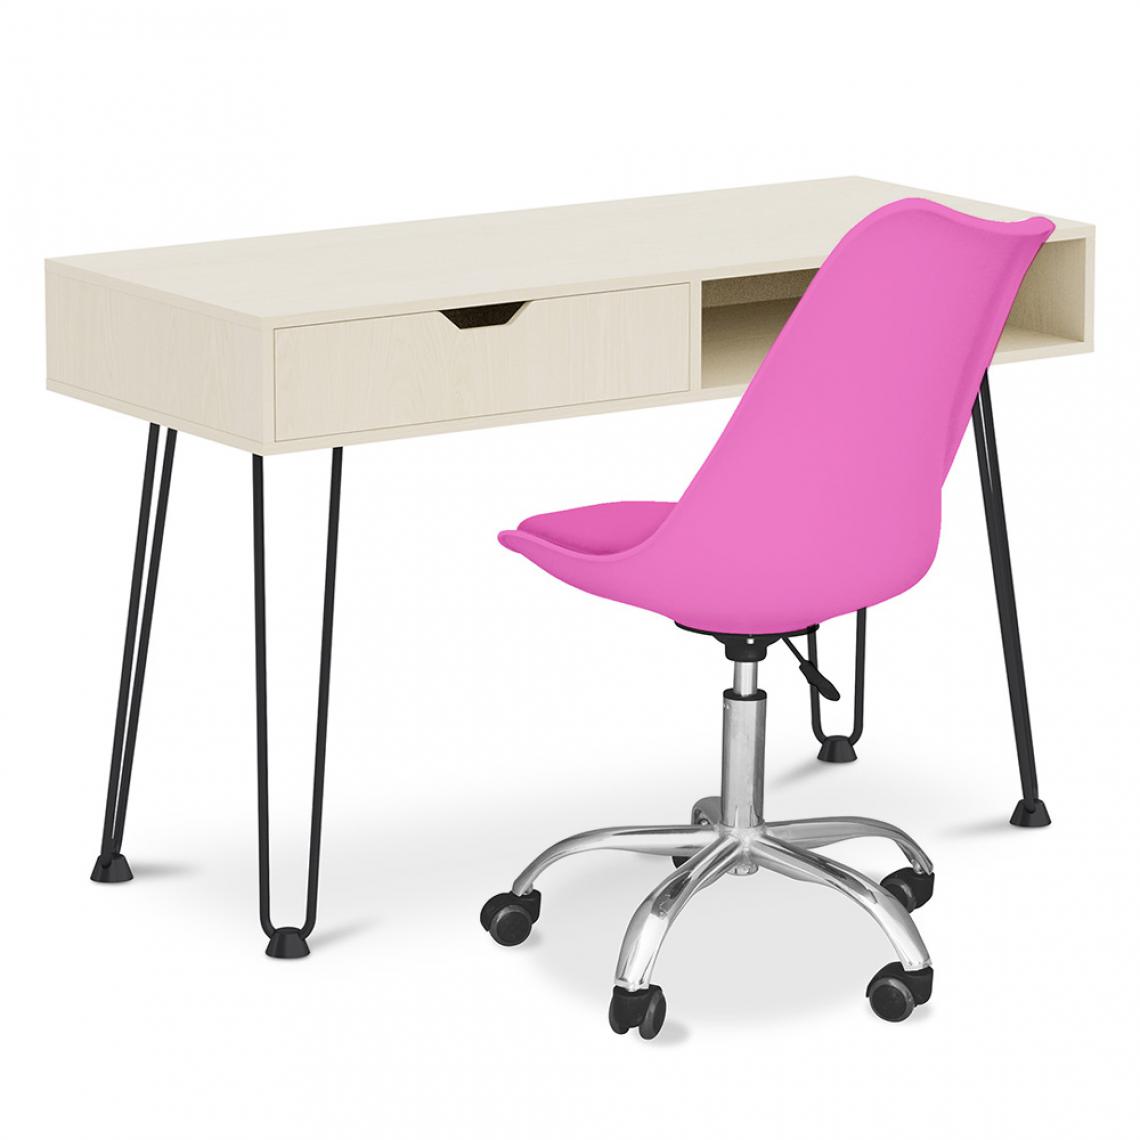 Iconik Interior - Bureau en bois Design pieds Hairpin style scandinave Andor + Chaise de bureau Tulip pivotante à roulettes - Bureaux